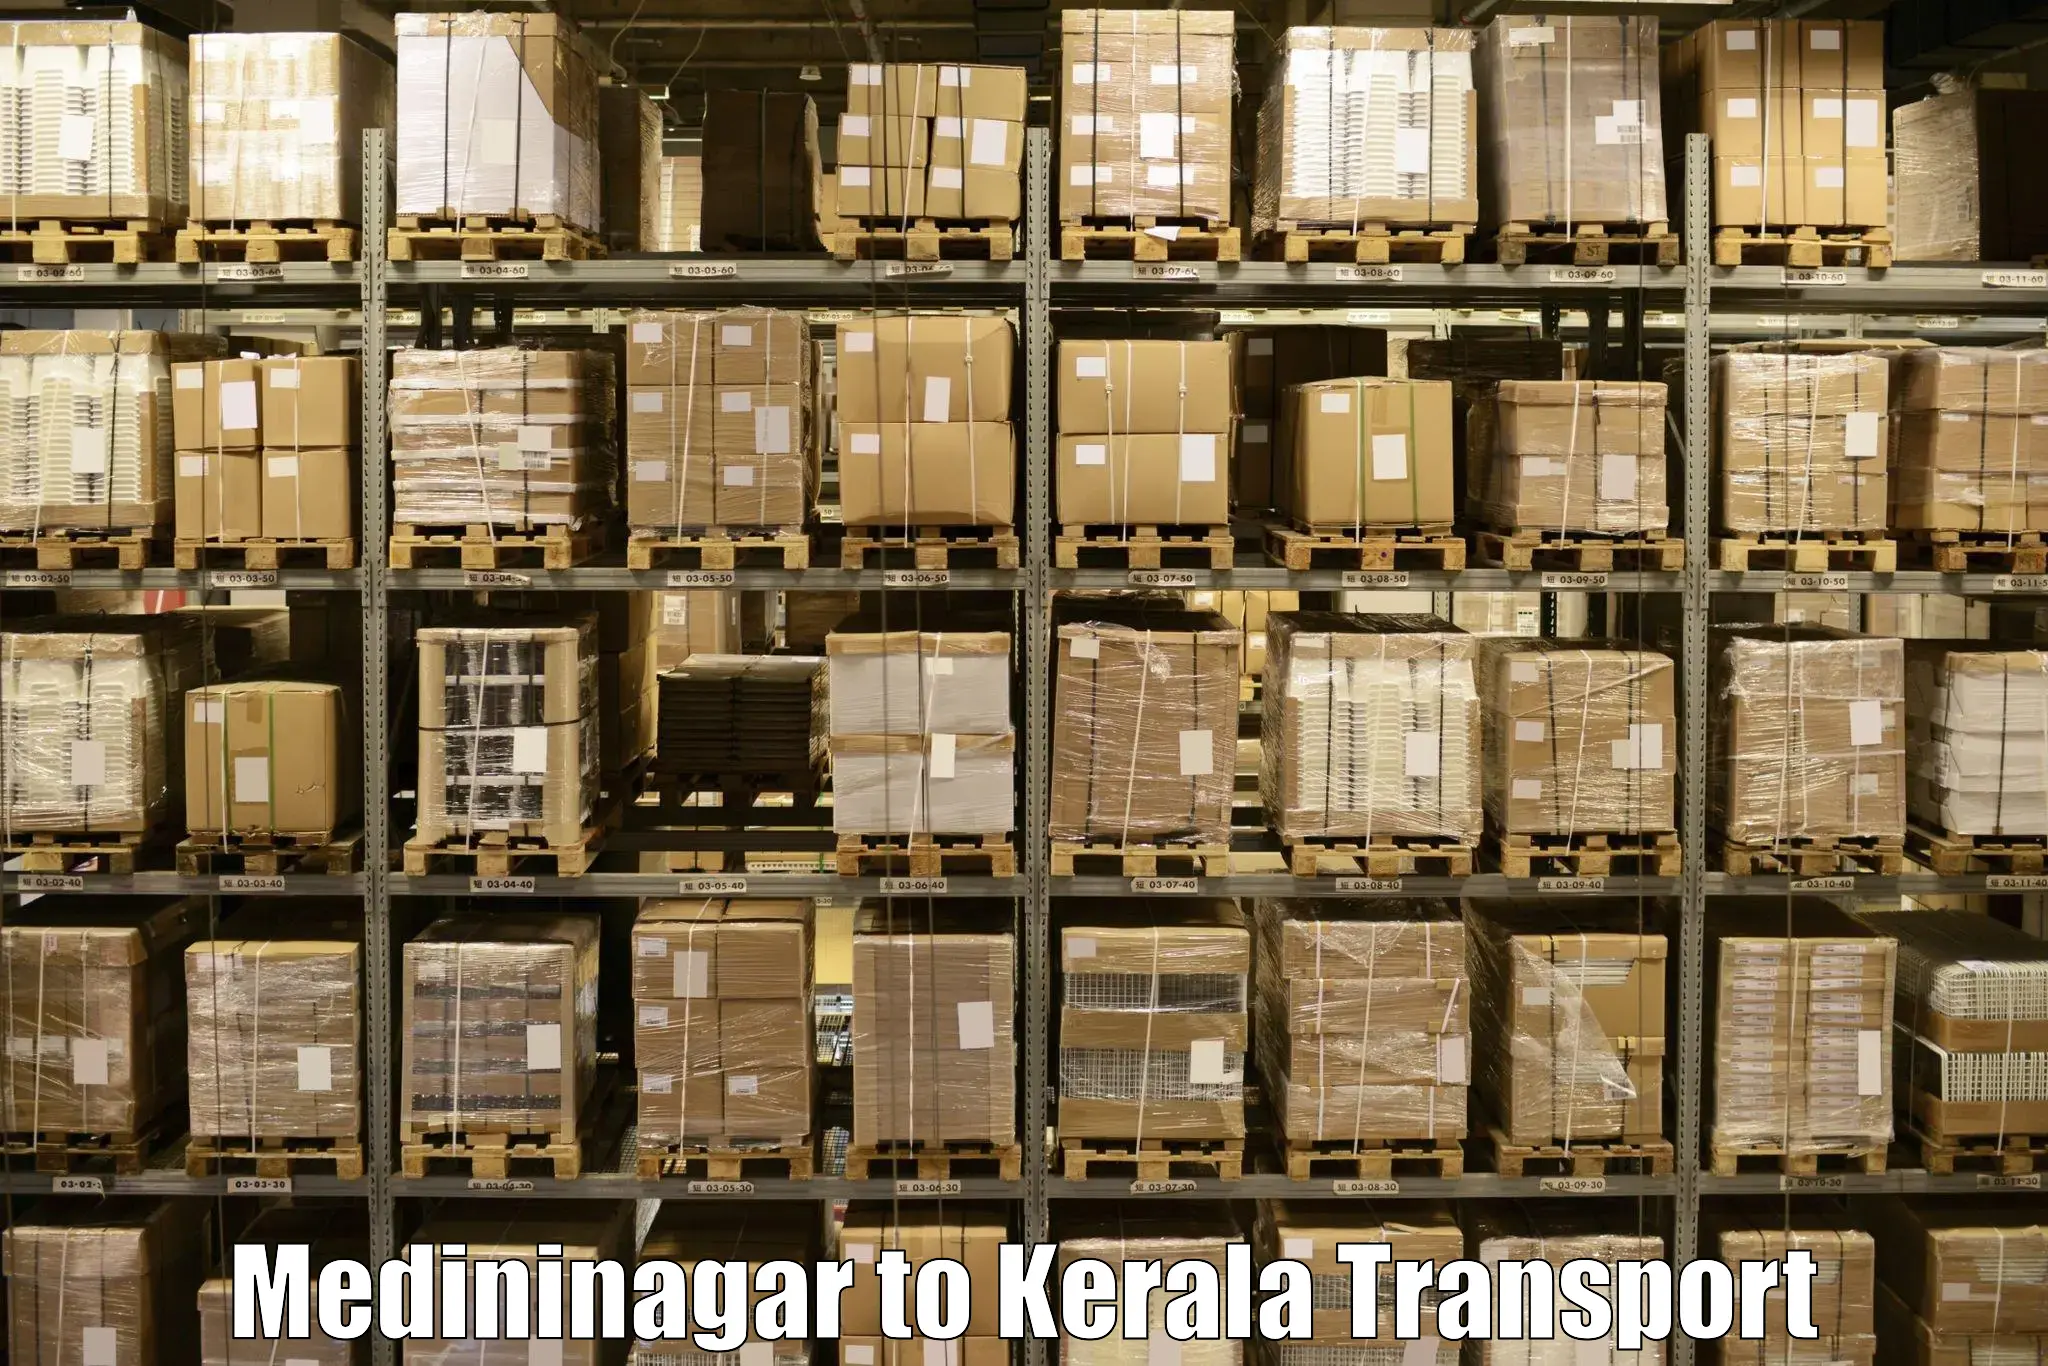 Domestic transport services in Medininagar to Guruvayur